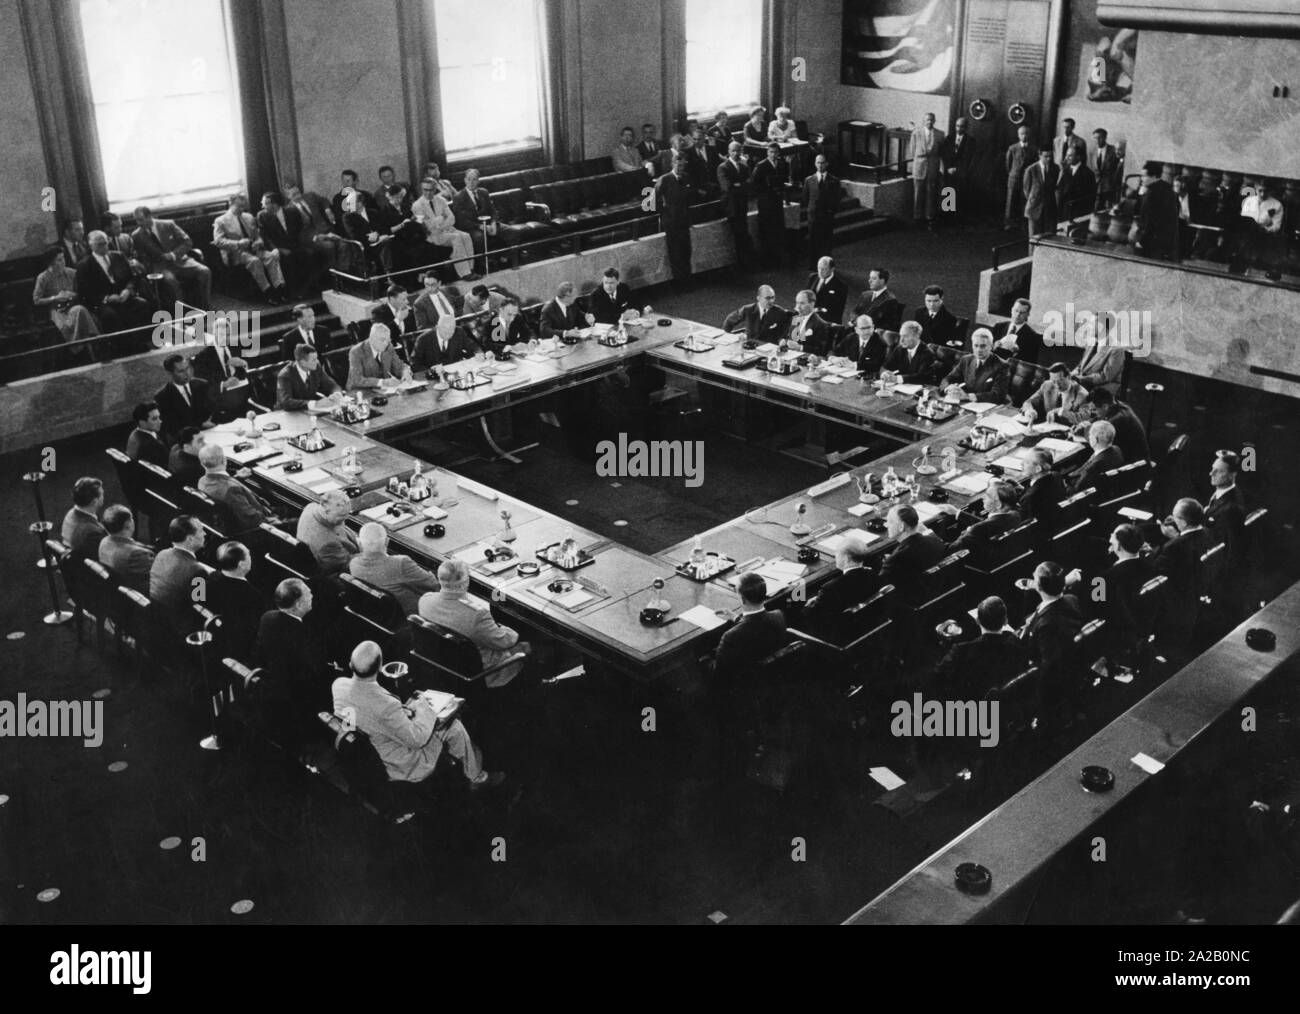 Treffen in einem Konferenzsaal während des Gipfels von Genf, ein Treffen der USA, Sowjetunion, Großbritannien und Frankreich, die vom 18. bis 23. Juli 1955 stattfand. Stockfoto